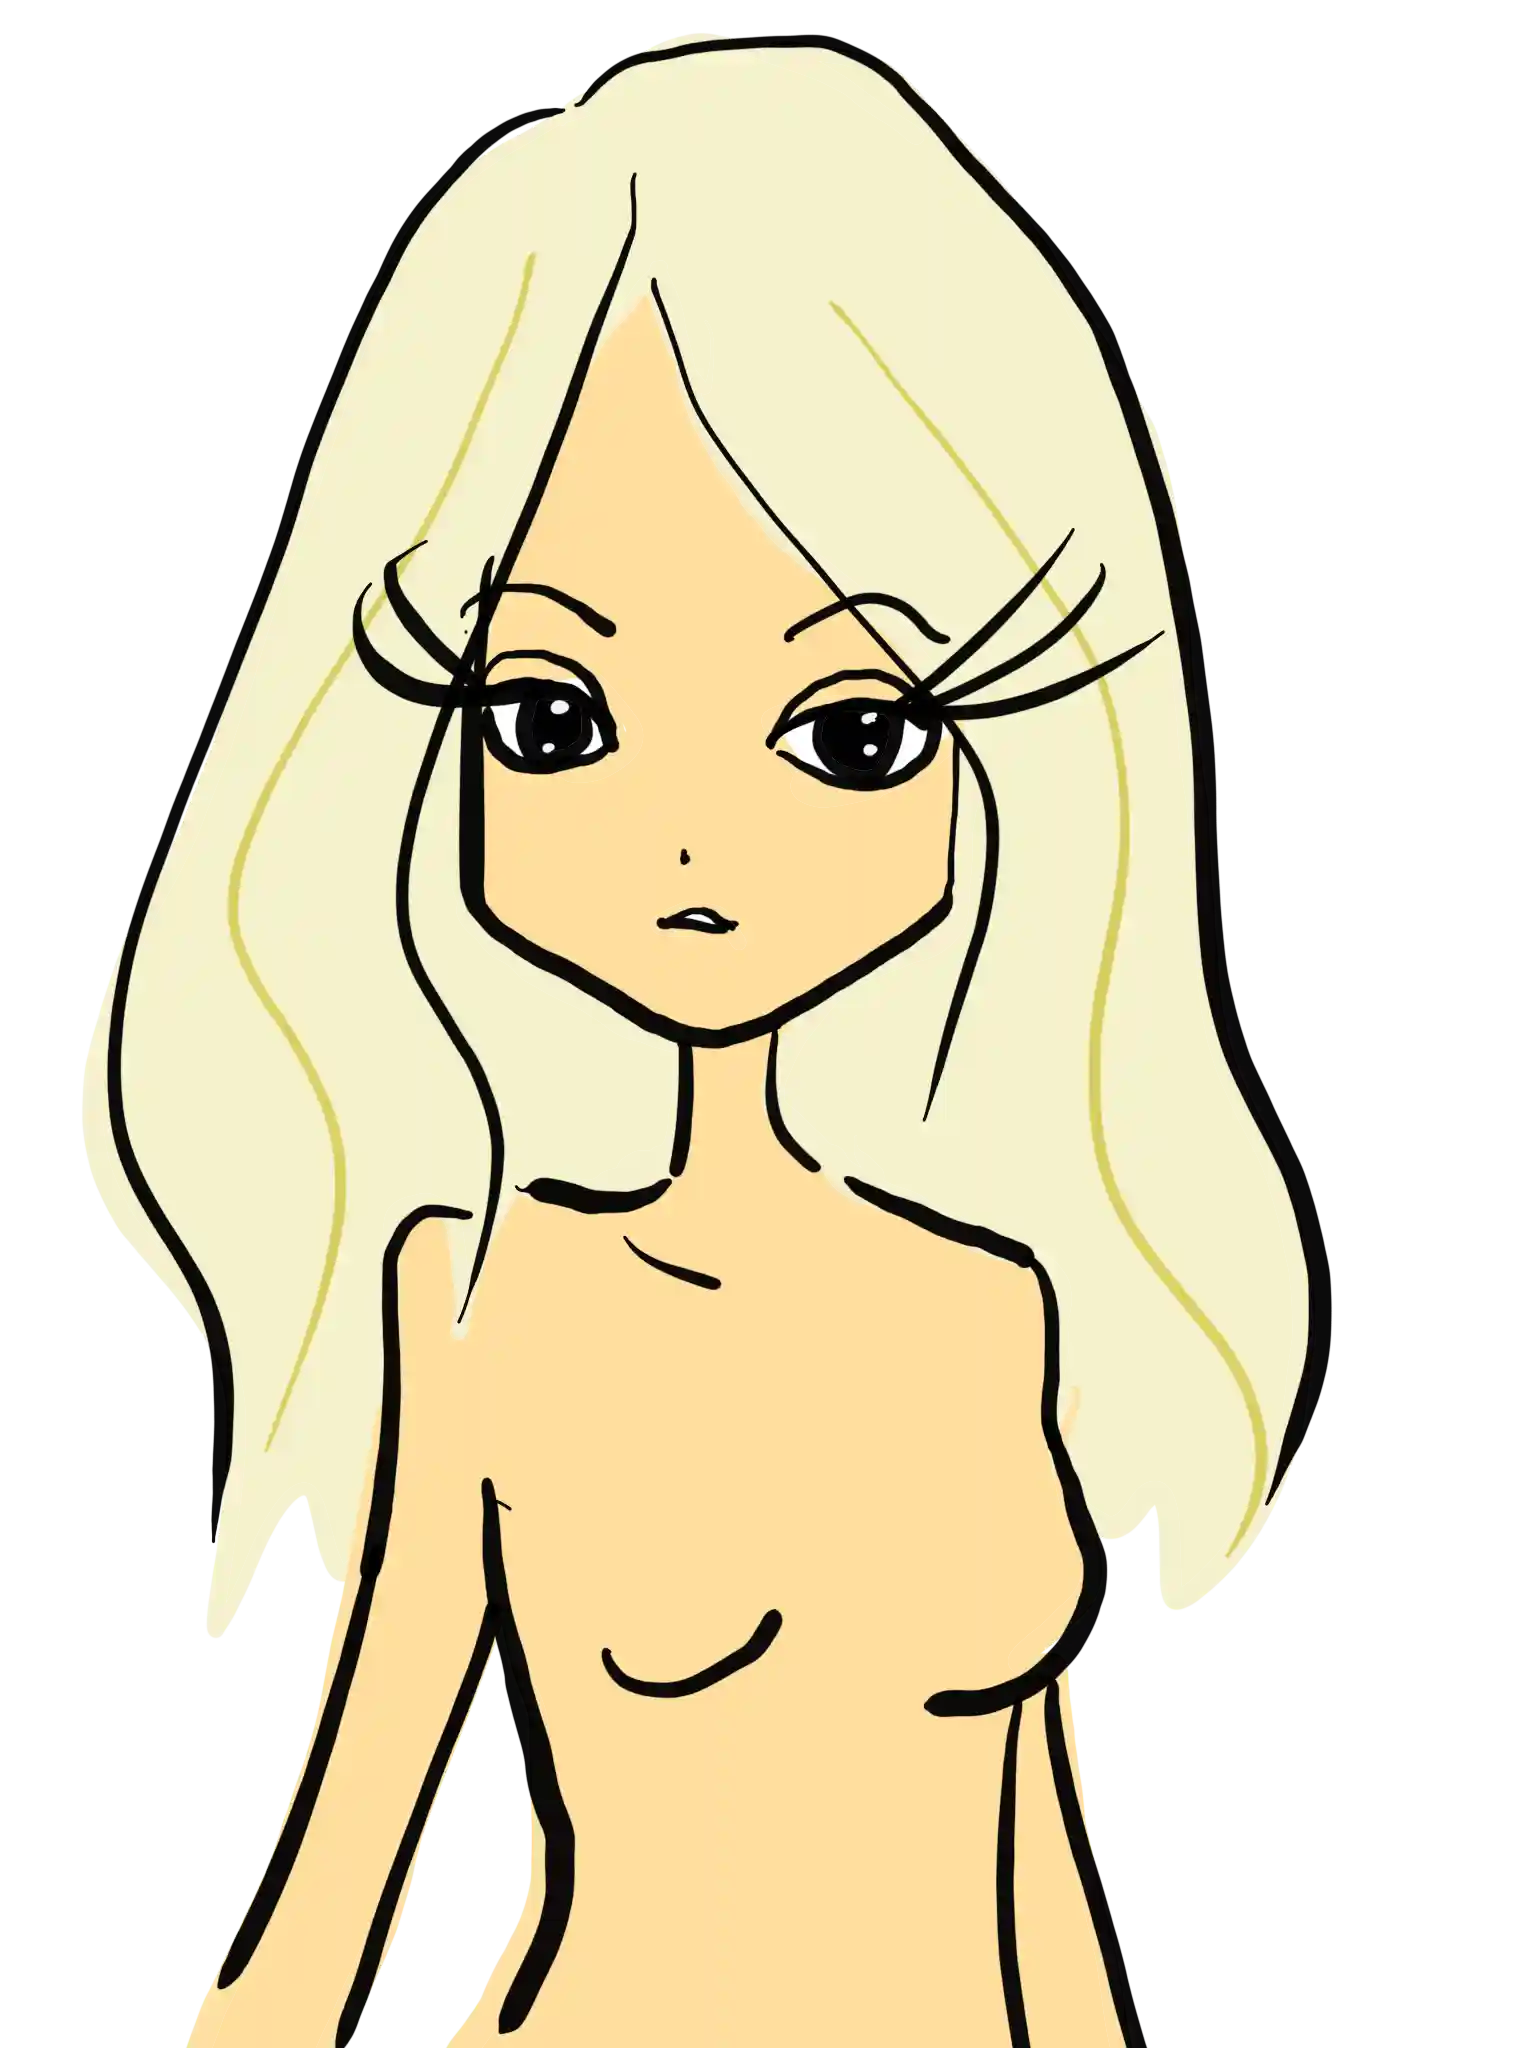 女性の体 全身 上半身 正面 横 後ろ姿 裸のおしゃれイラスト 無料素材 おのちあきファッションイラスト ガールズイラスト